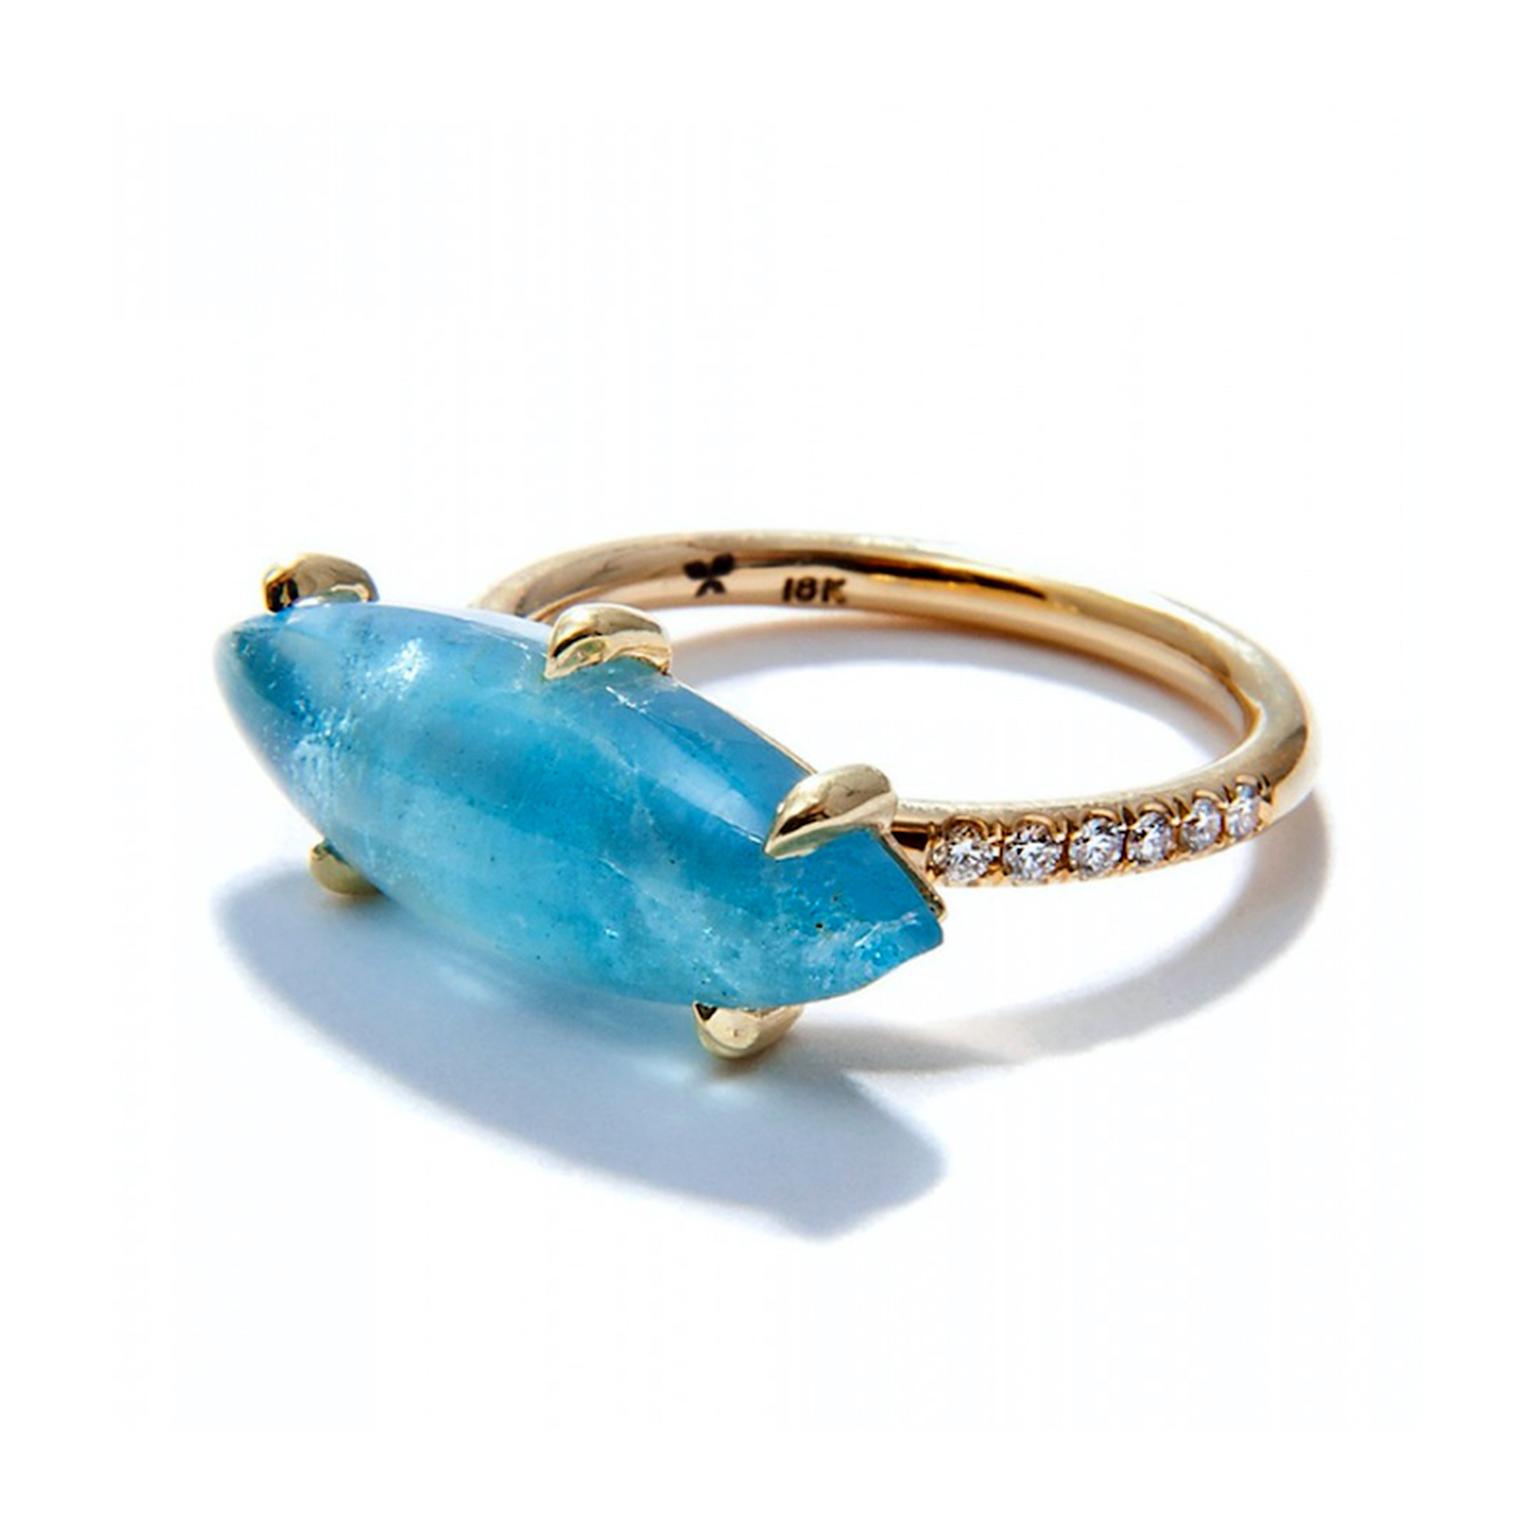 Jordan Alexander marquise aquamarine ring